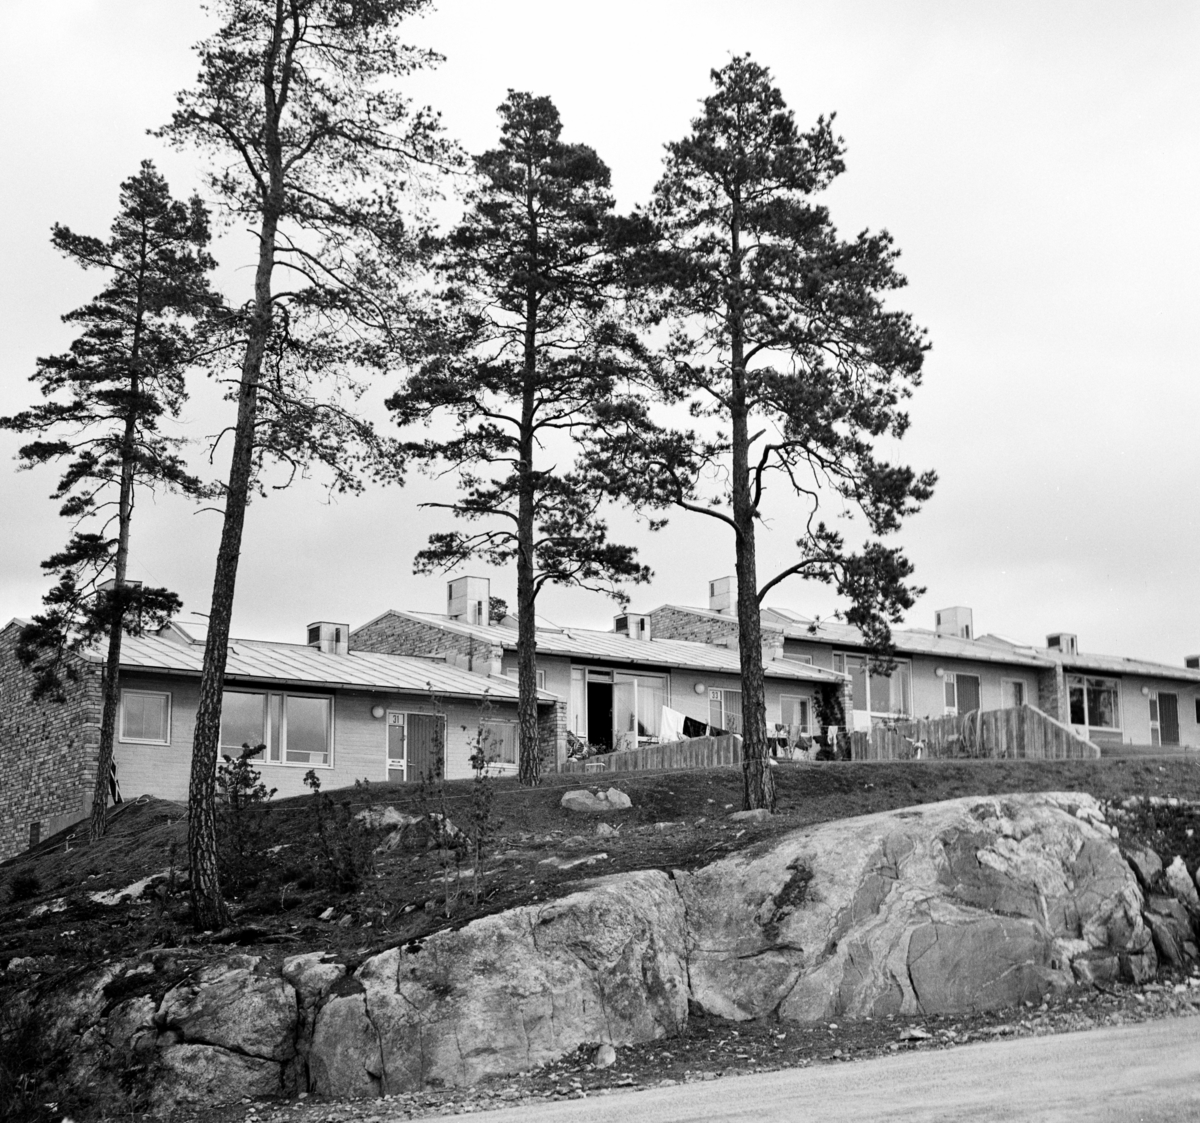 Radhus i Vällingby
Exteriör, radhusområdet Atlantis. Fasader mot bergsknalle med tallar.